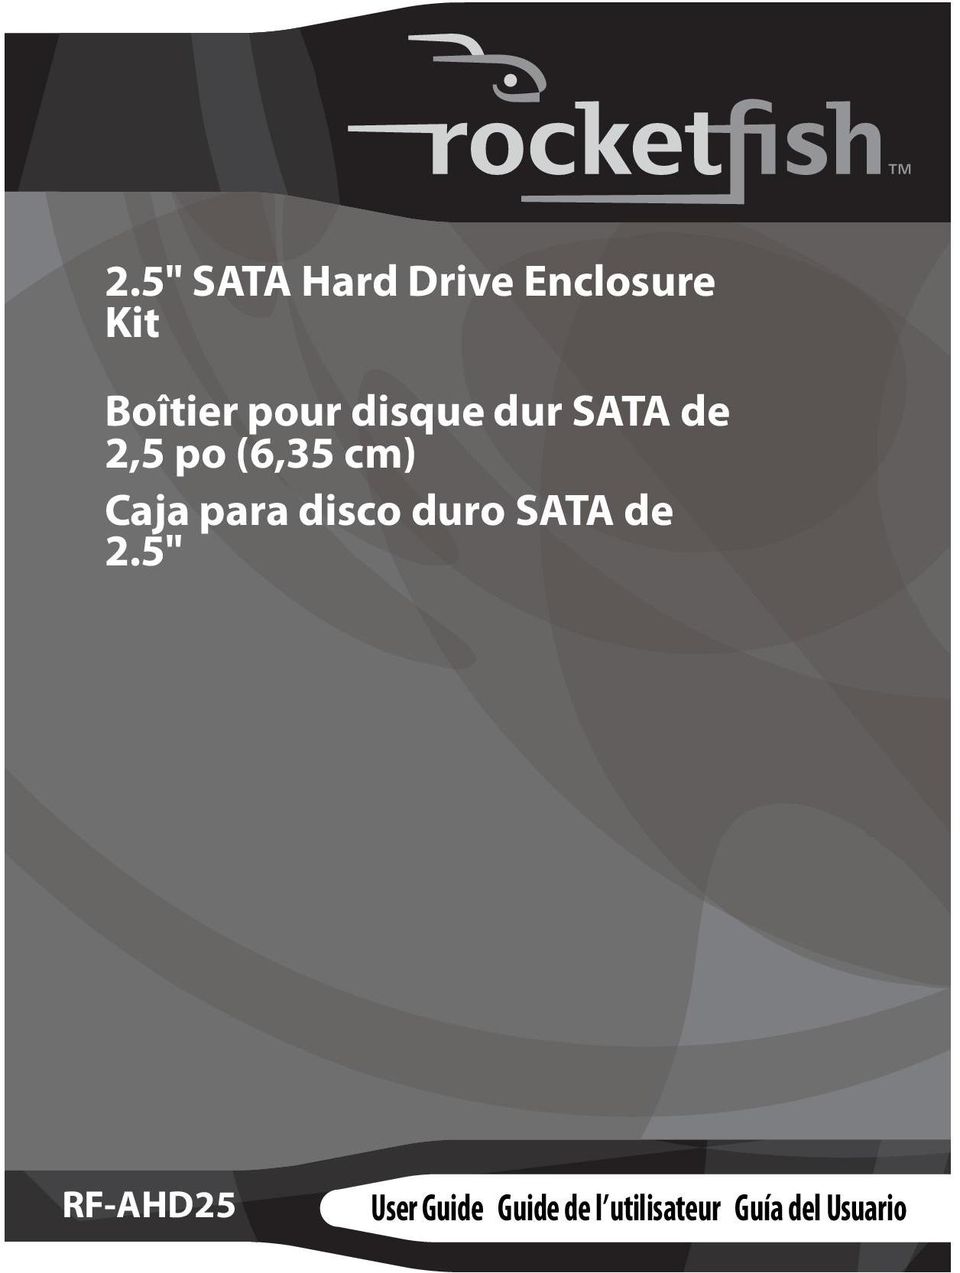 Caja para disco duro SATA de 2.